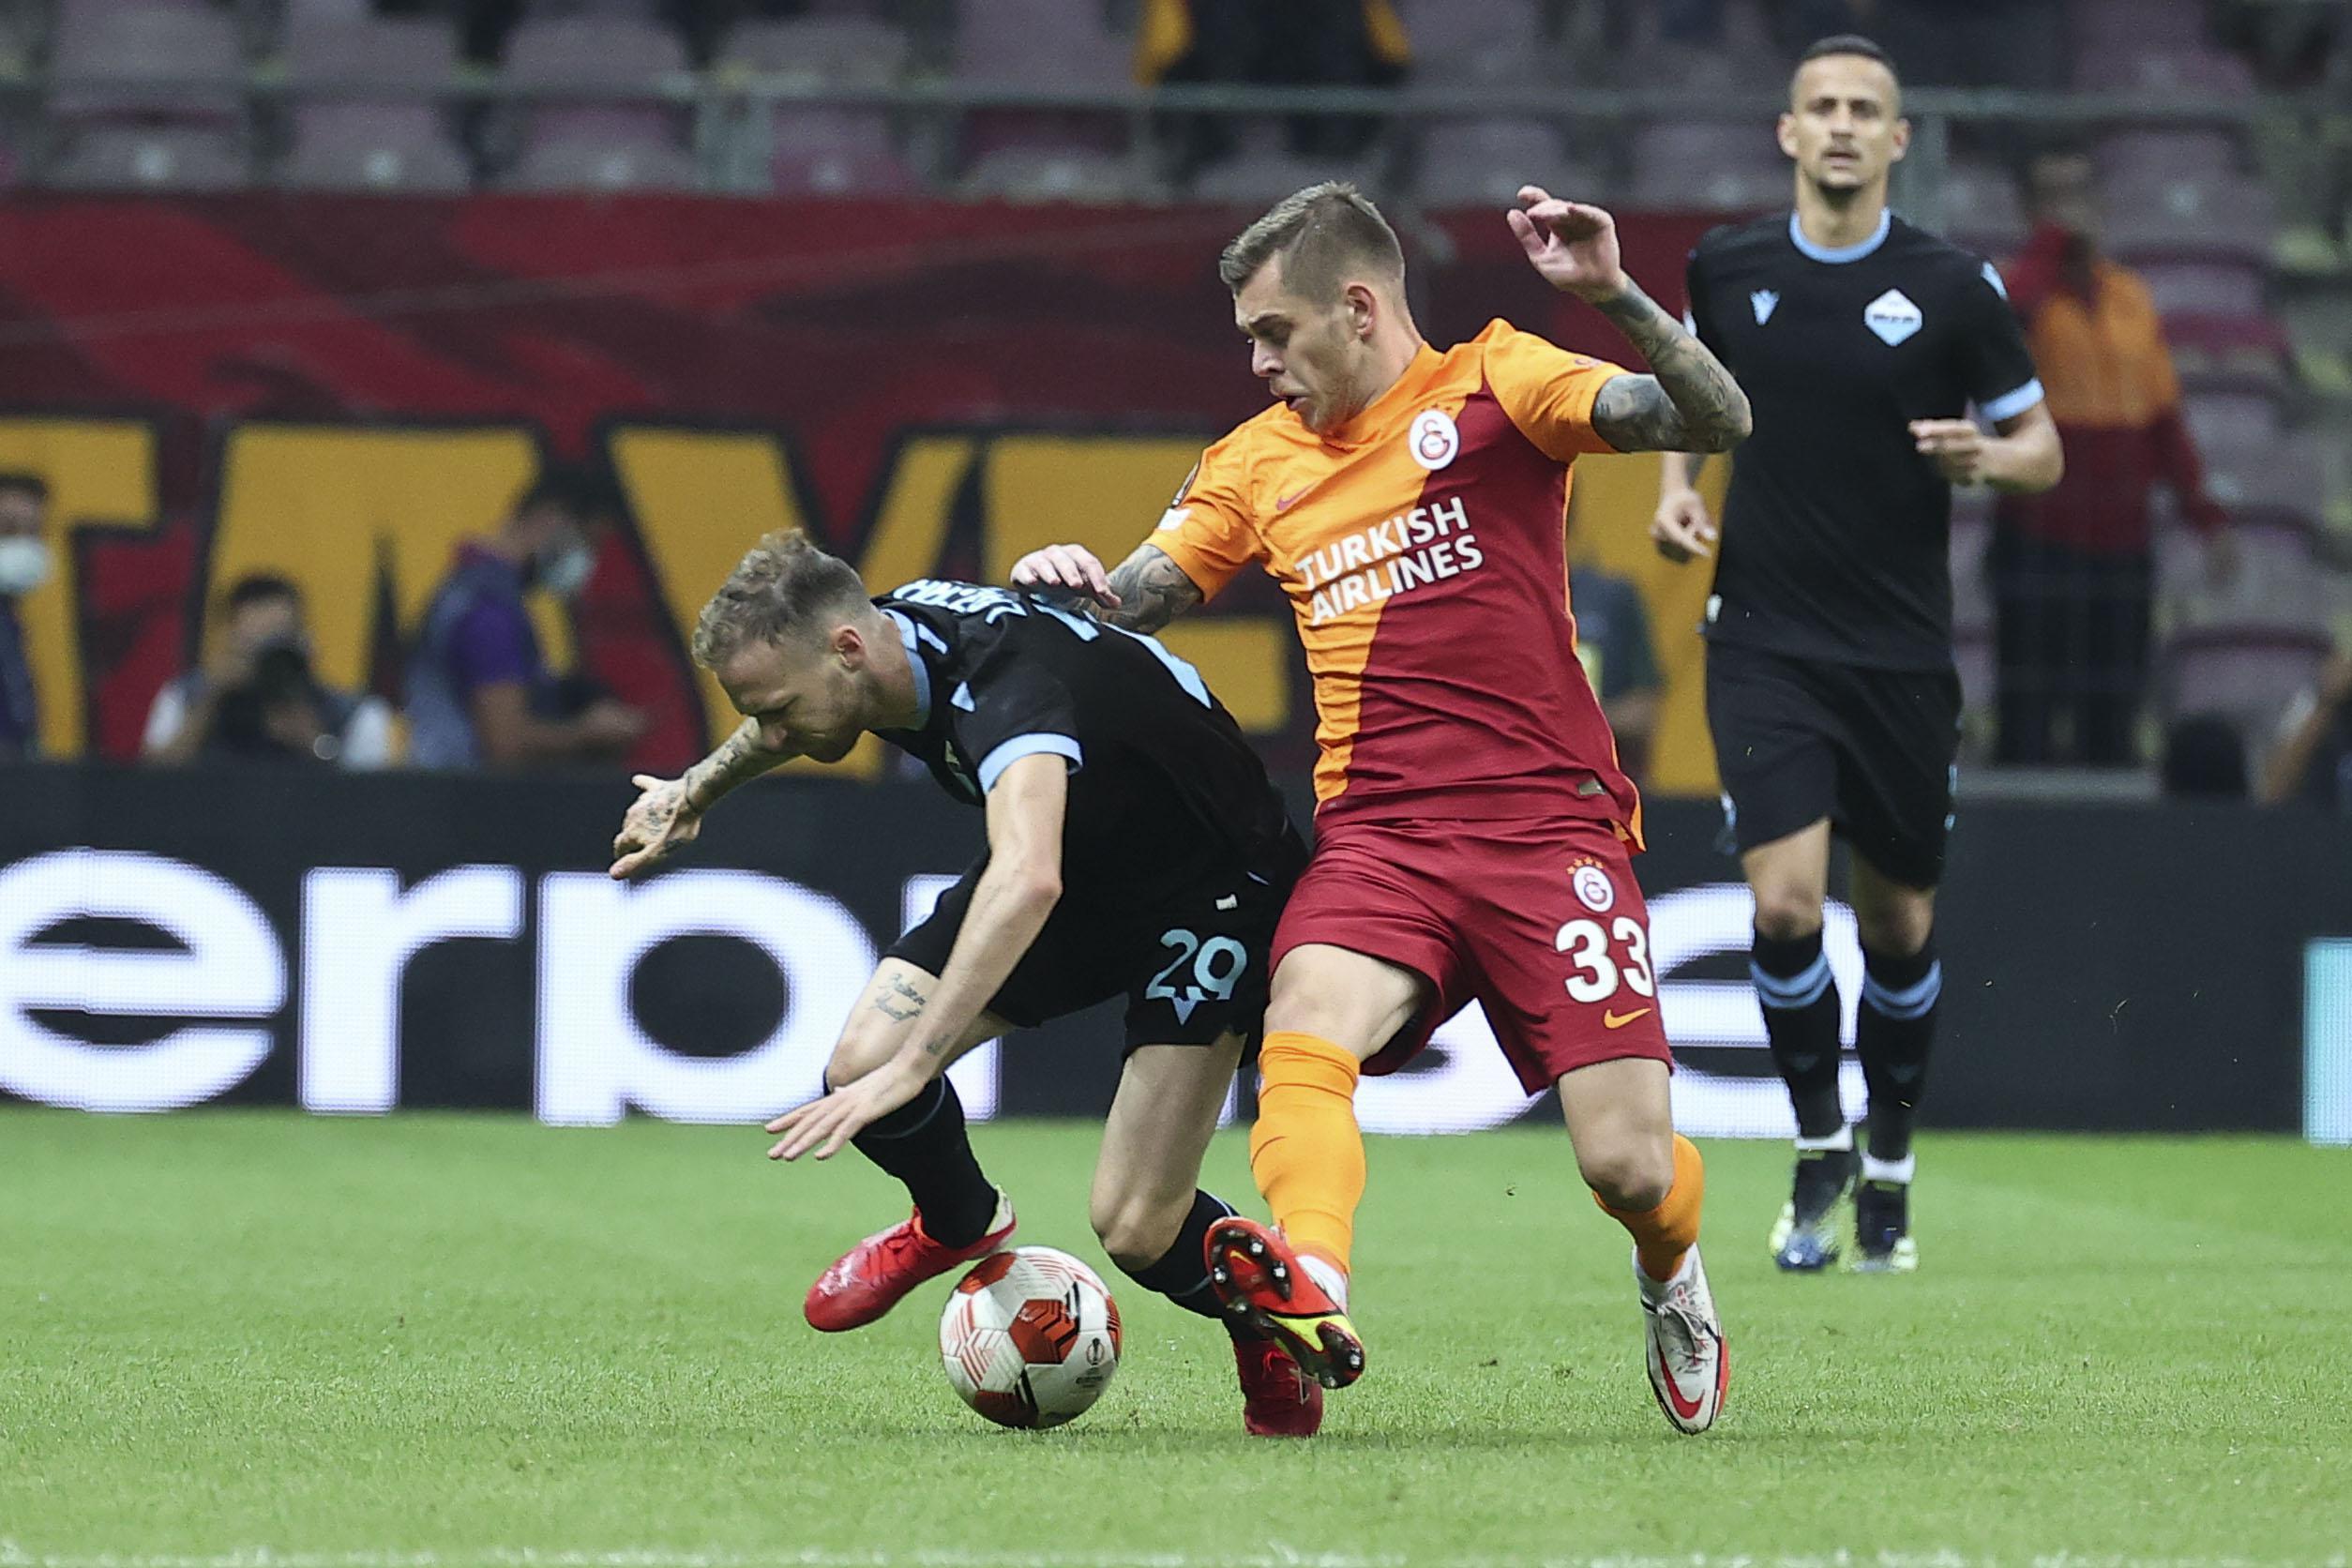 (ÖZET) Galatasaray-Lazio maç sonucu: 1-0